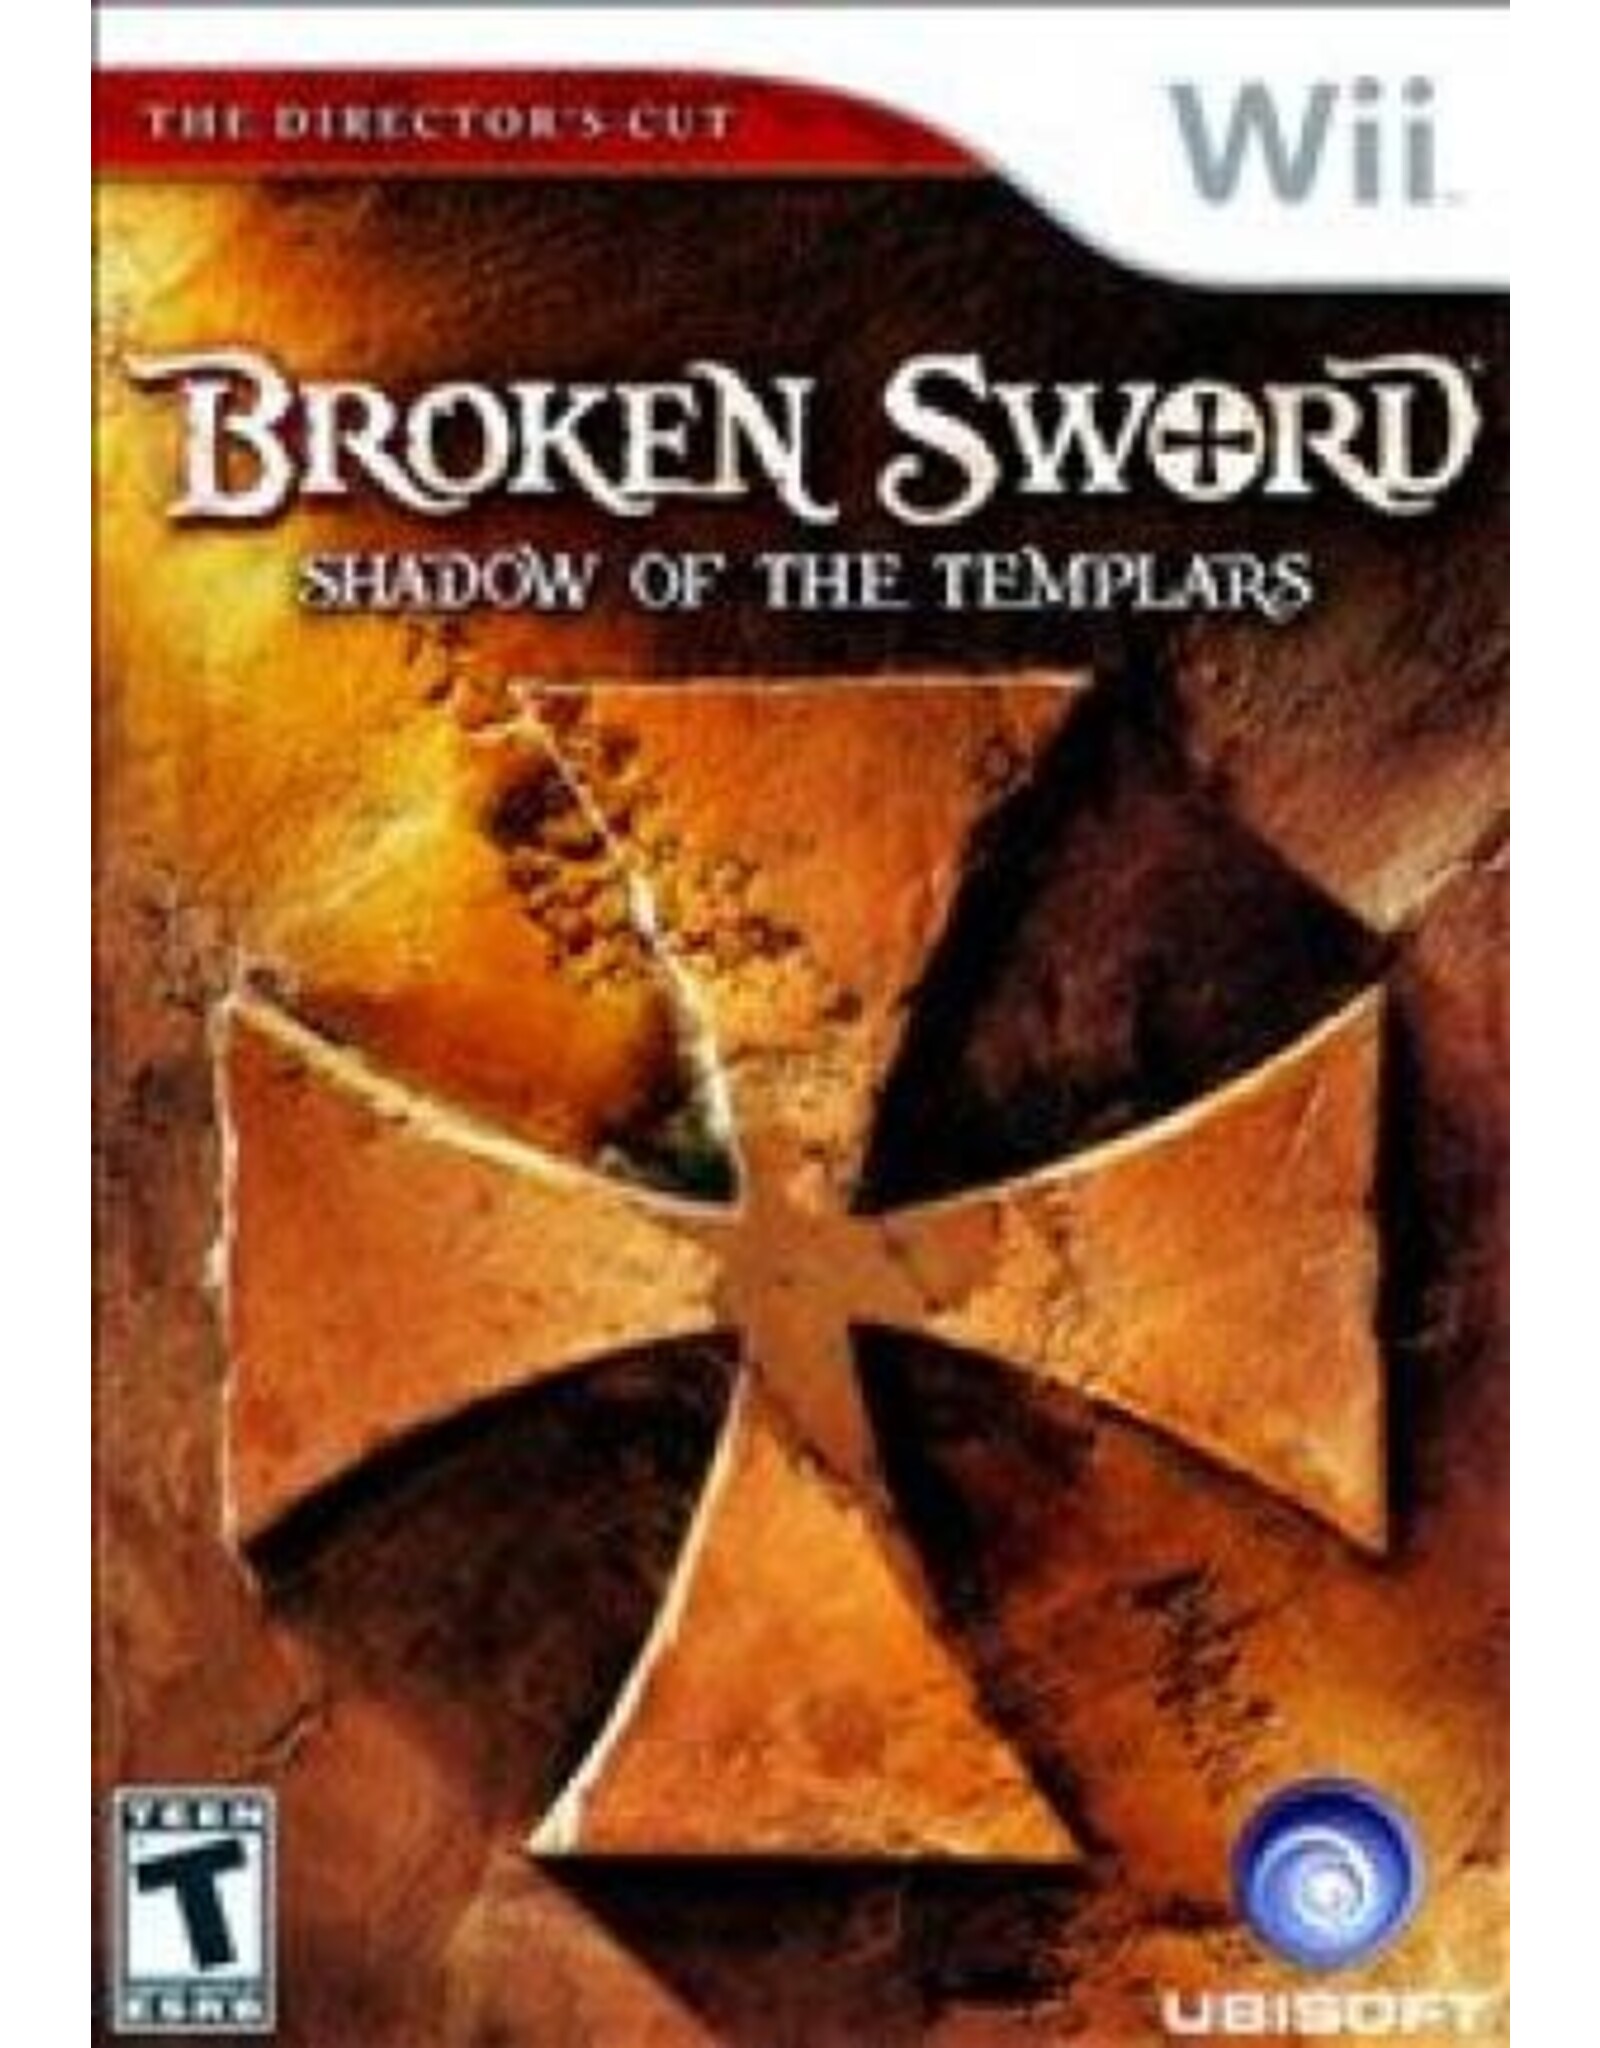 Wii Broken Sword The Shadow of the Templars (CiB)